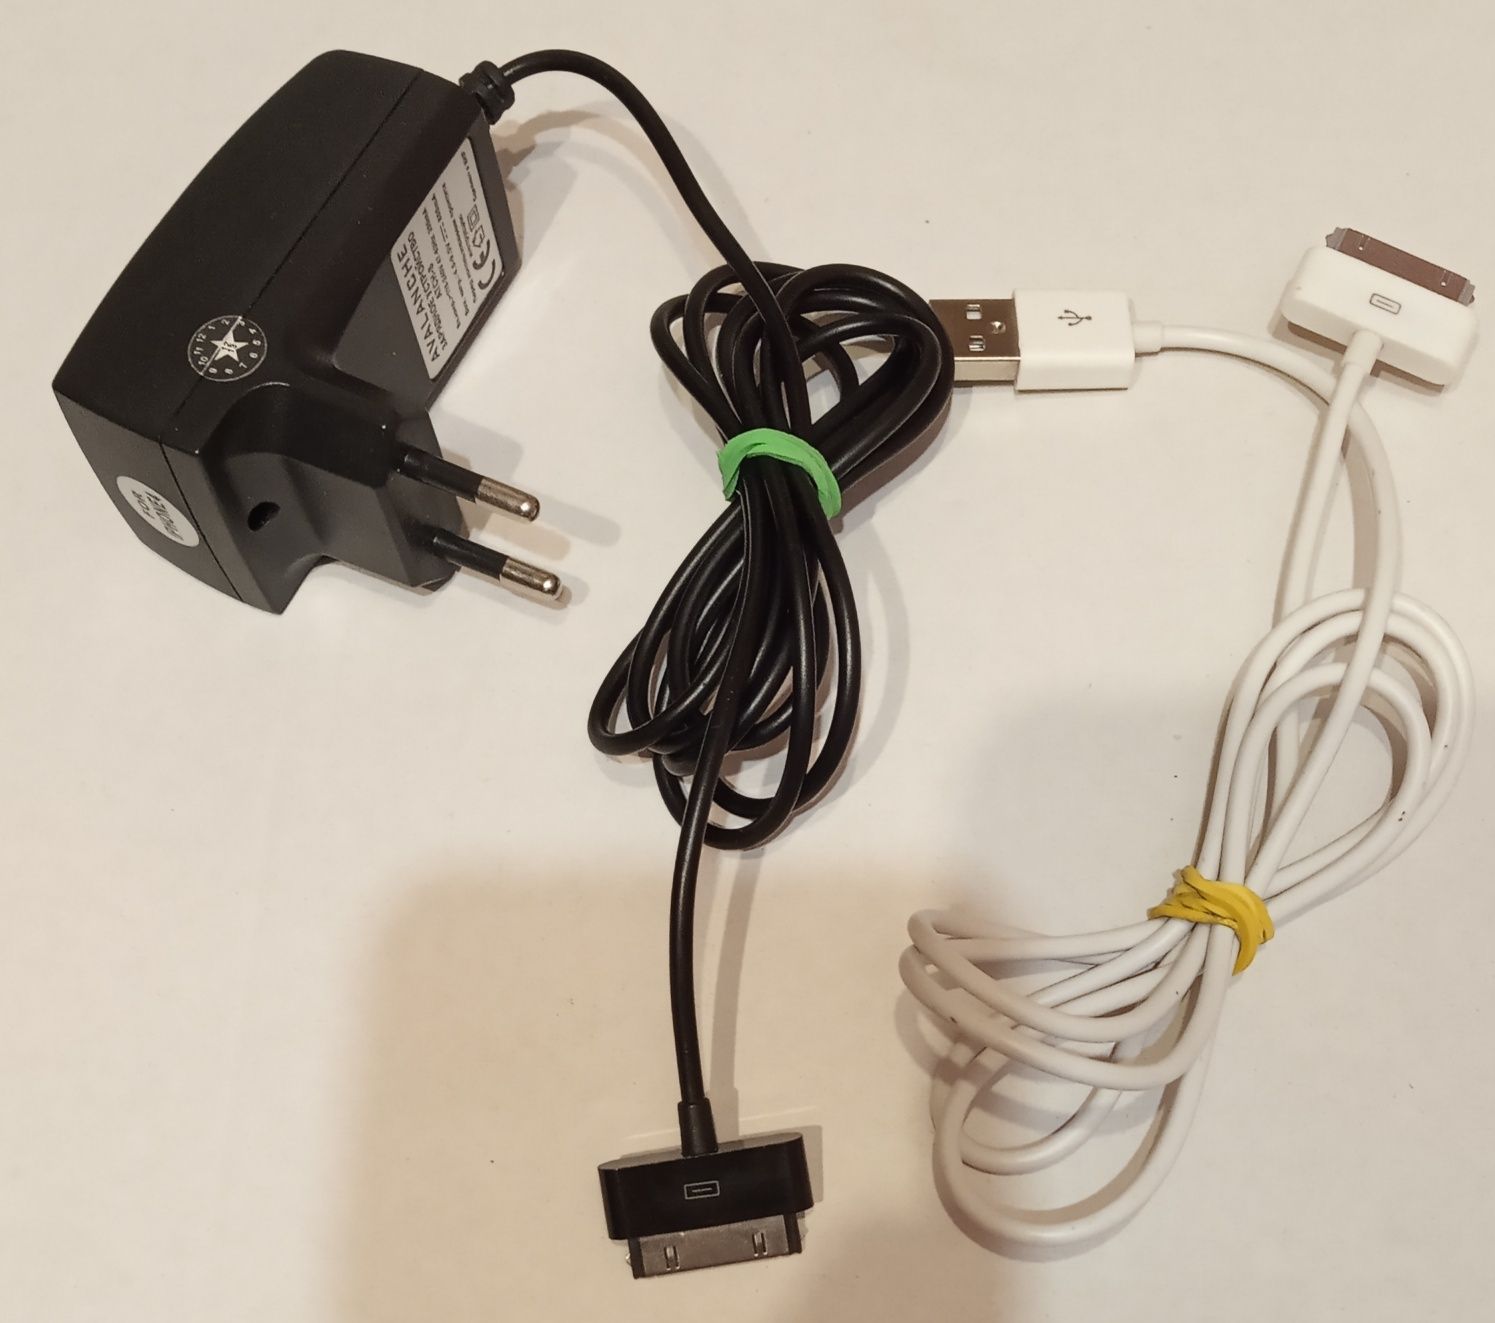 Блок питания и шнур  USB Iphone 30-pin (цена за всё)